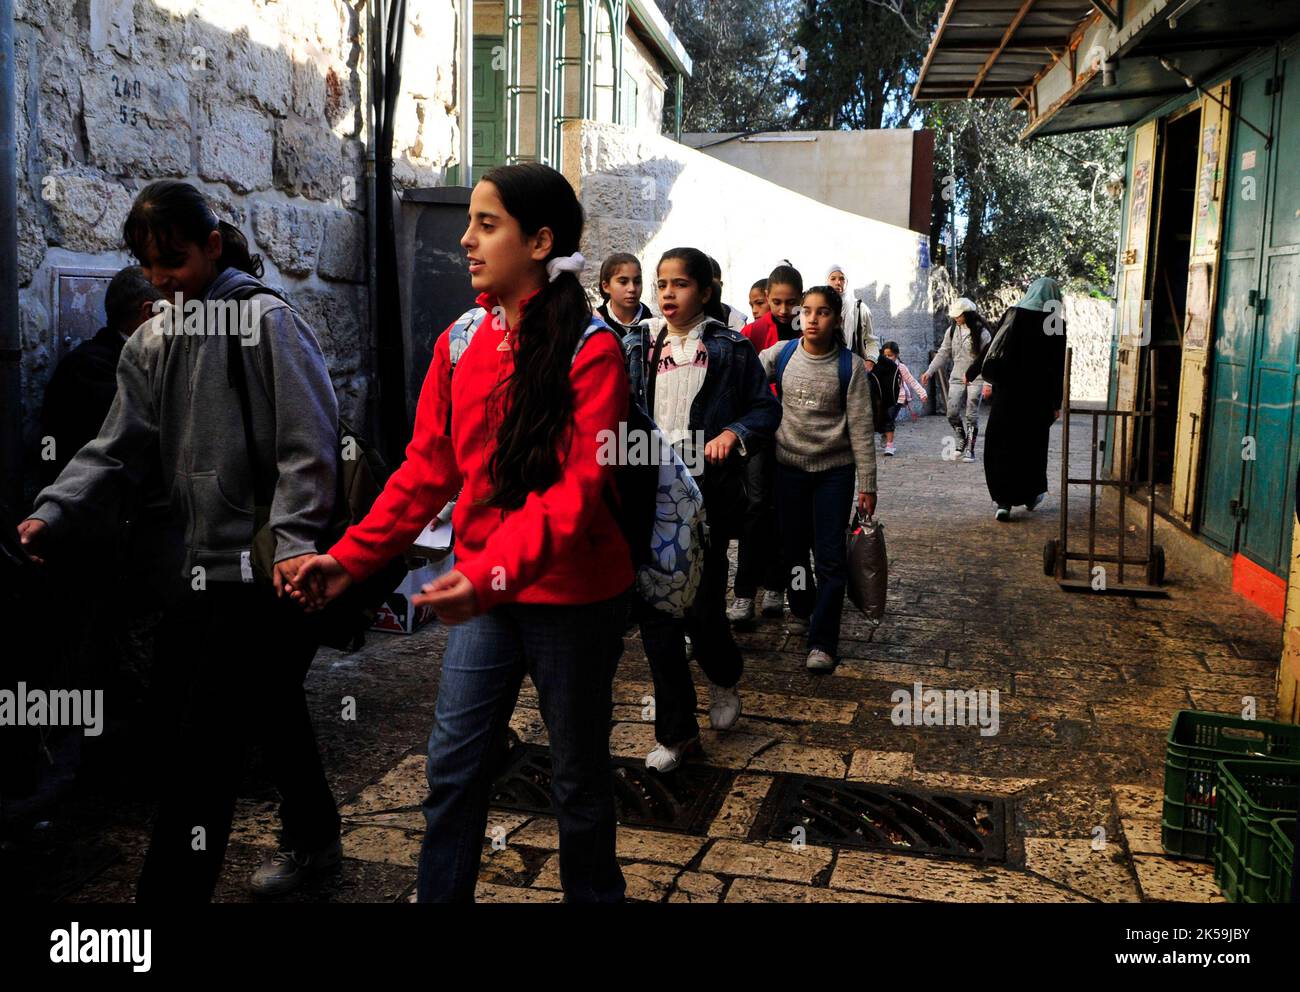 Studenti palestinesi che camminano nel quartiere musulmano della città vecchia di Gerusalemme. Foto Stock